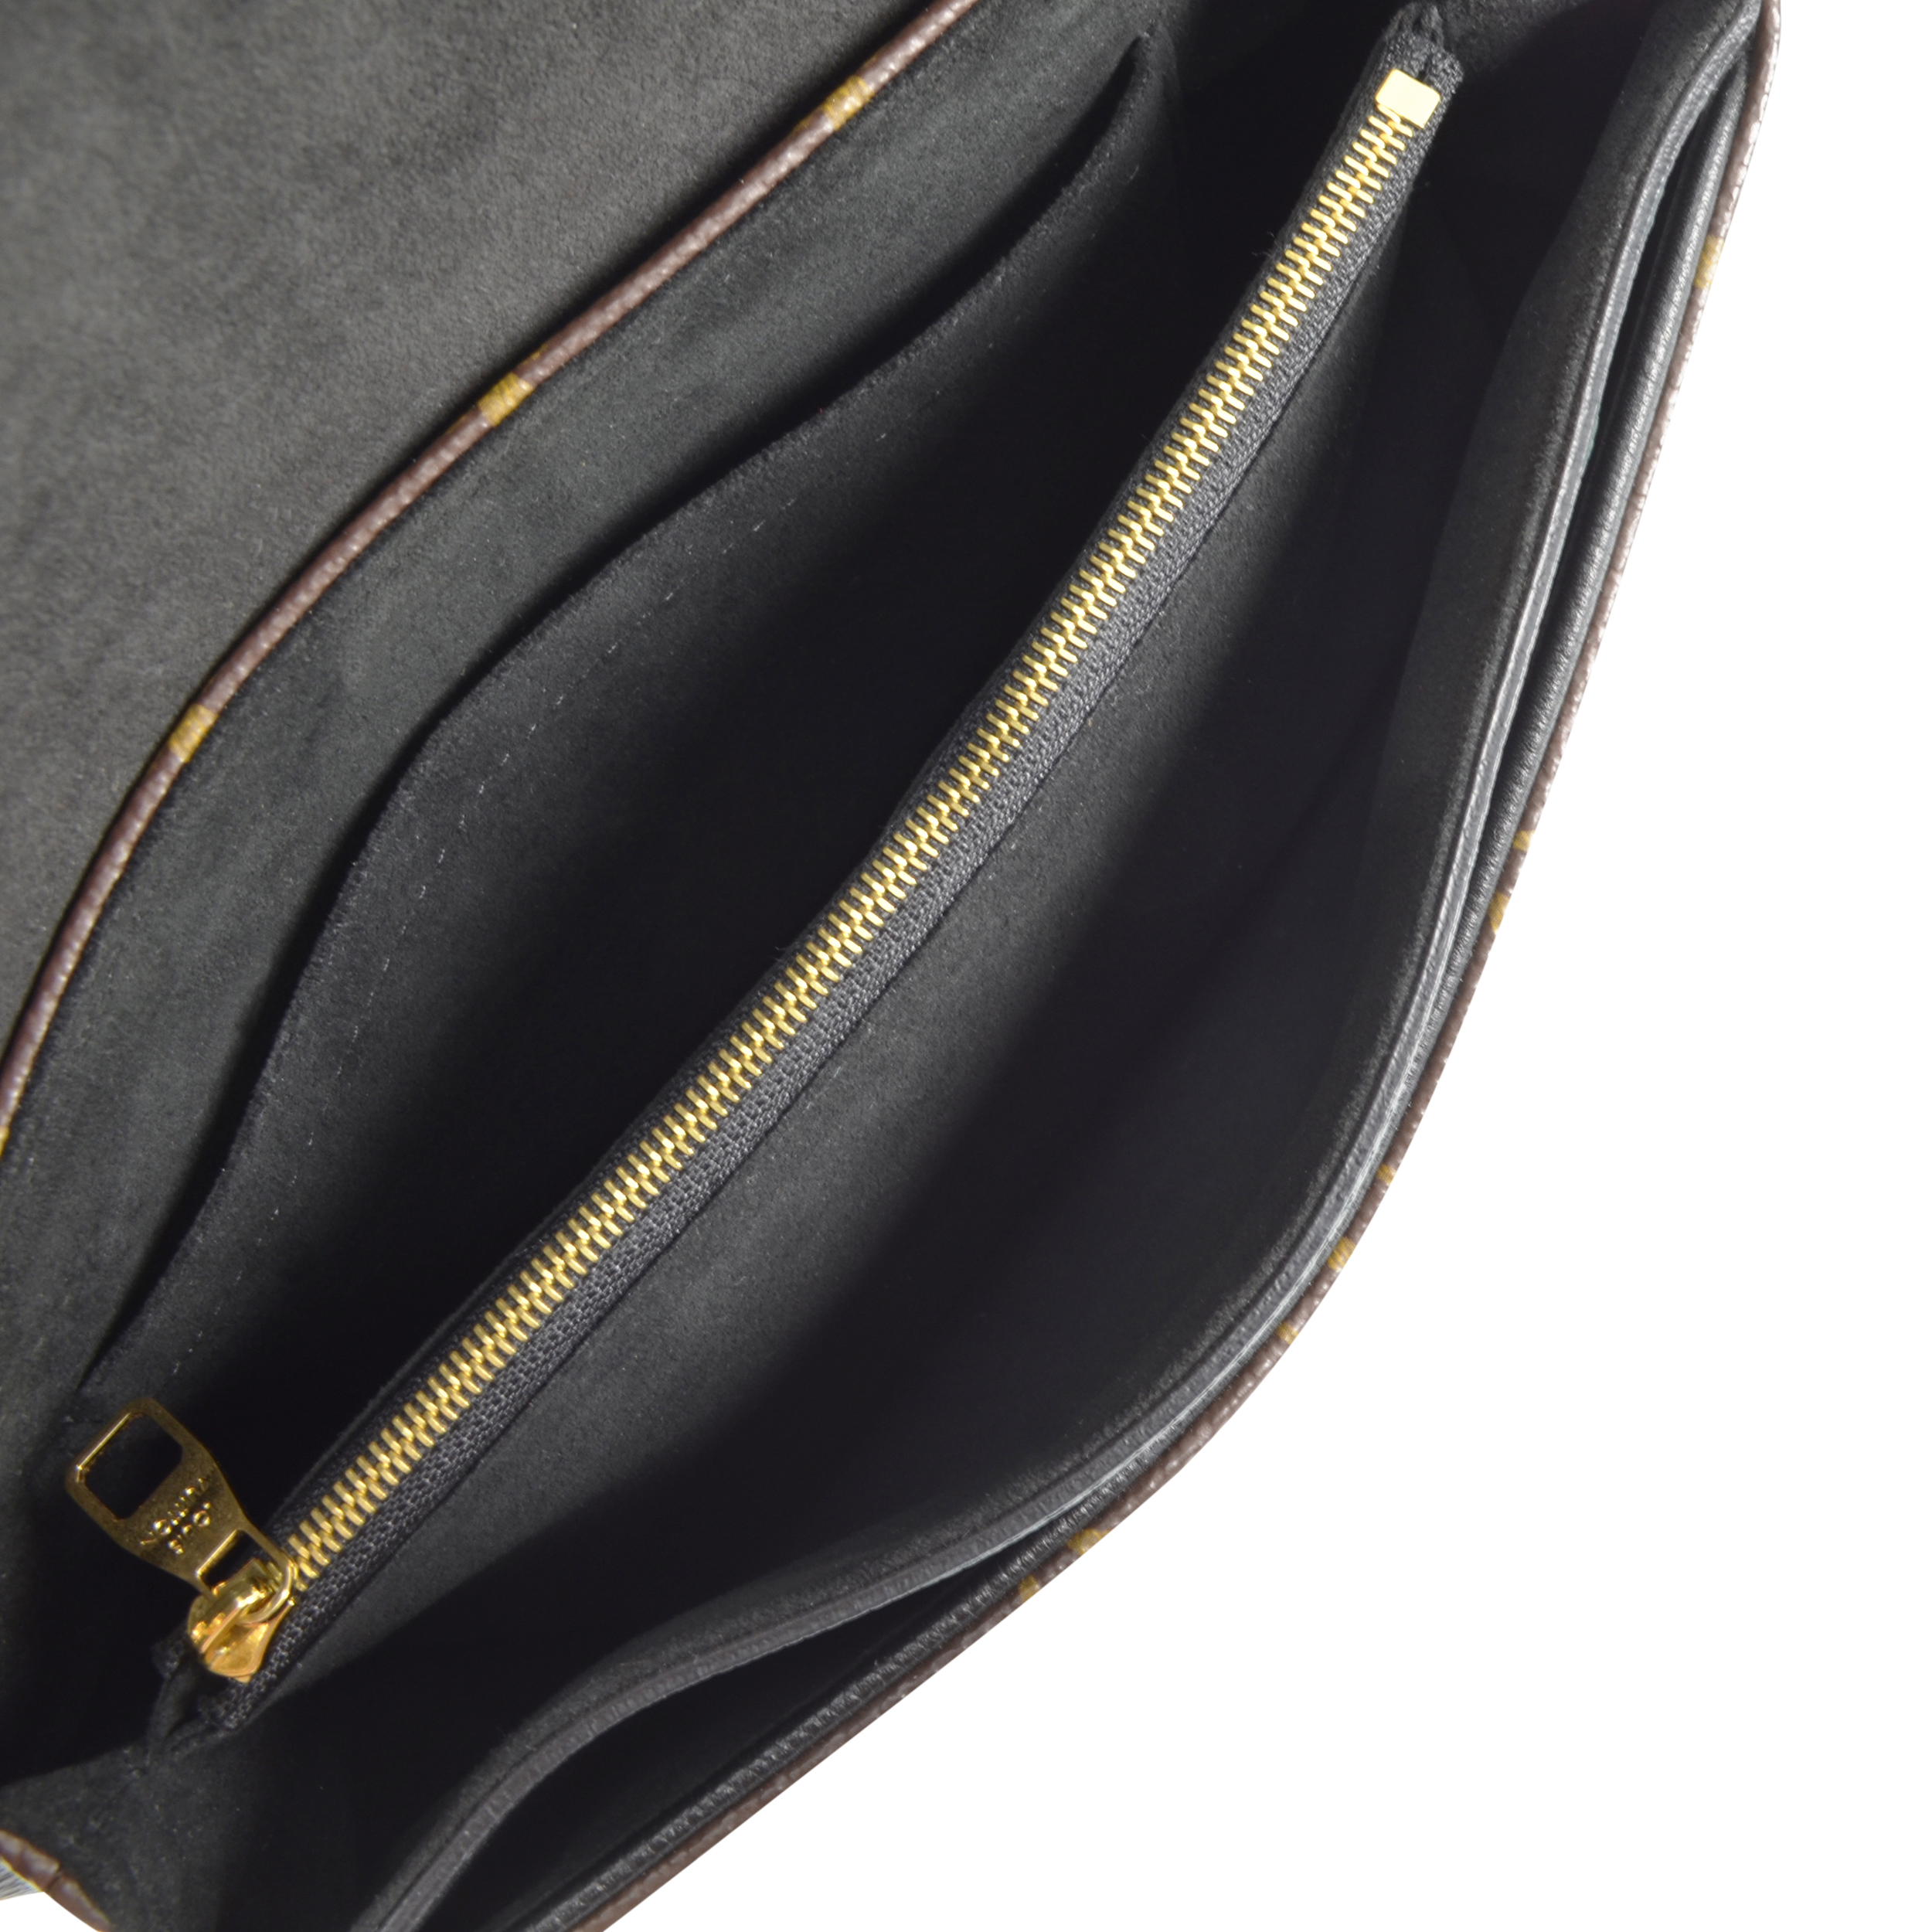 Louis Vuitton M41223 Pallas Chain Shoulder Bag Monogram Canvas